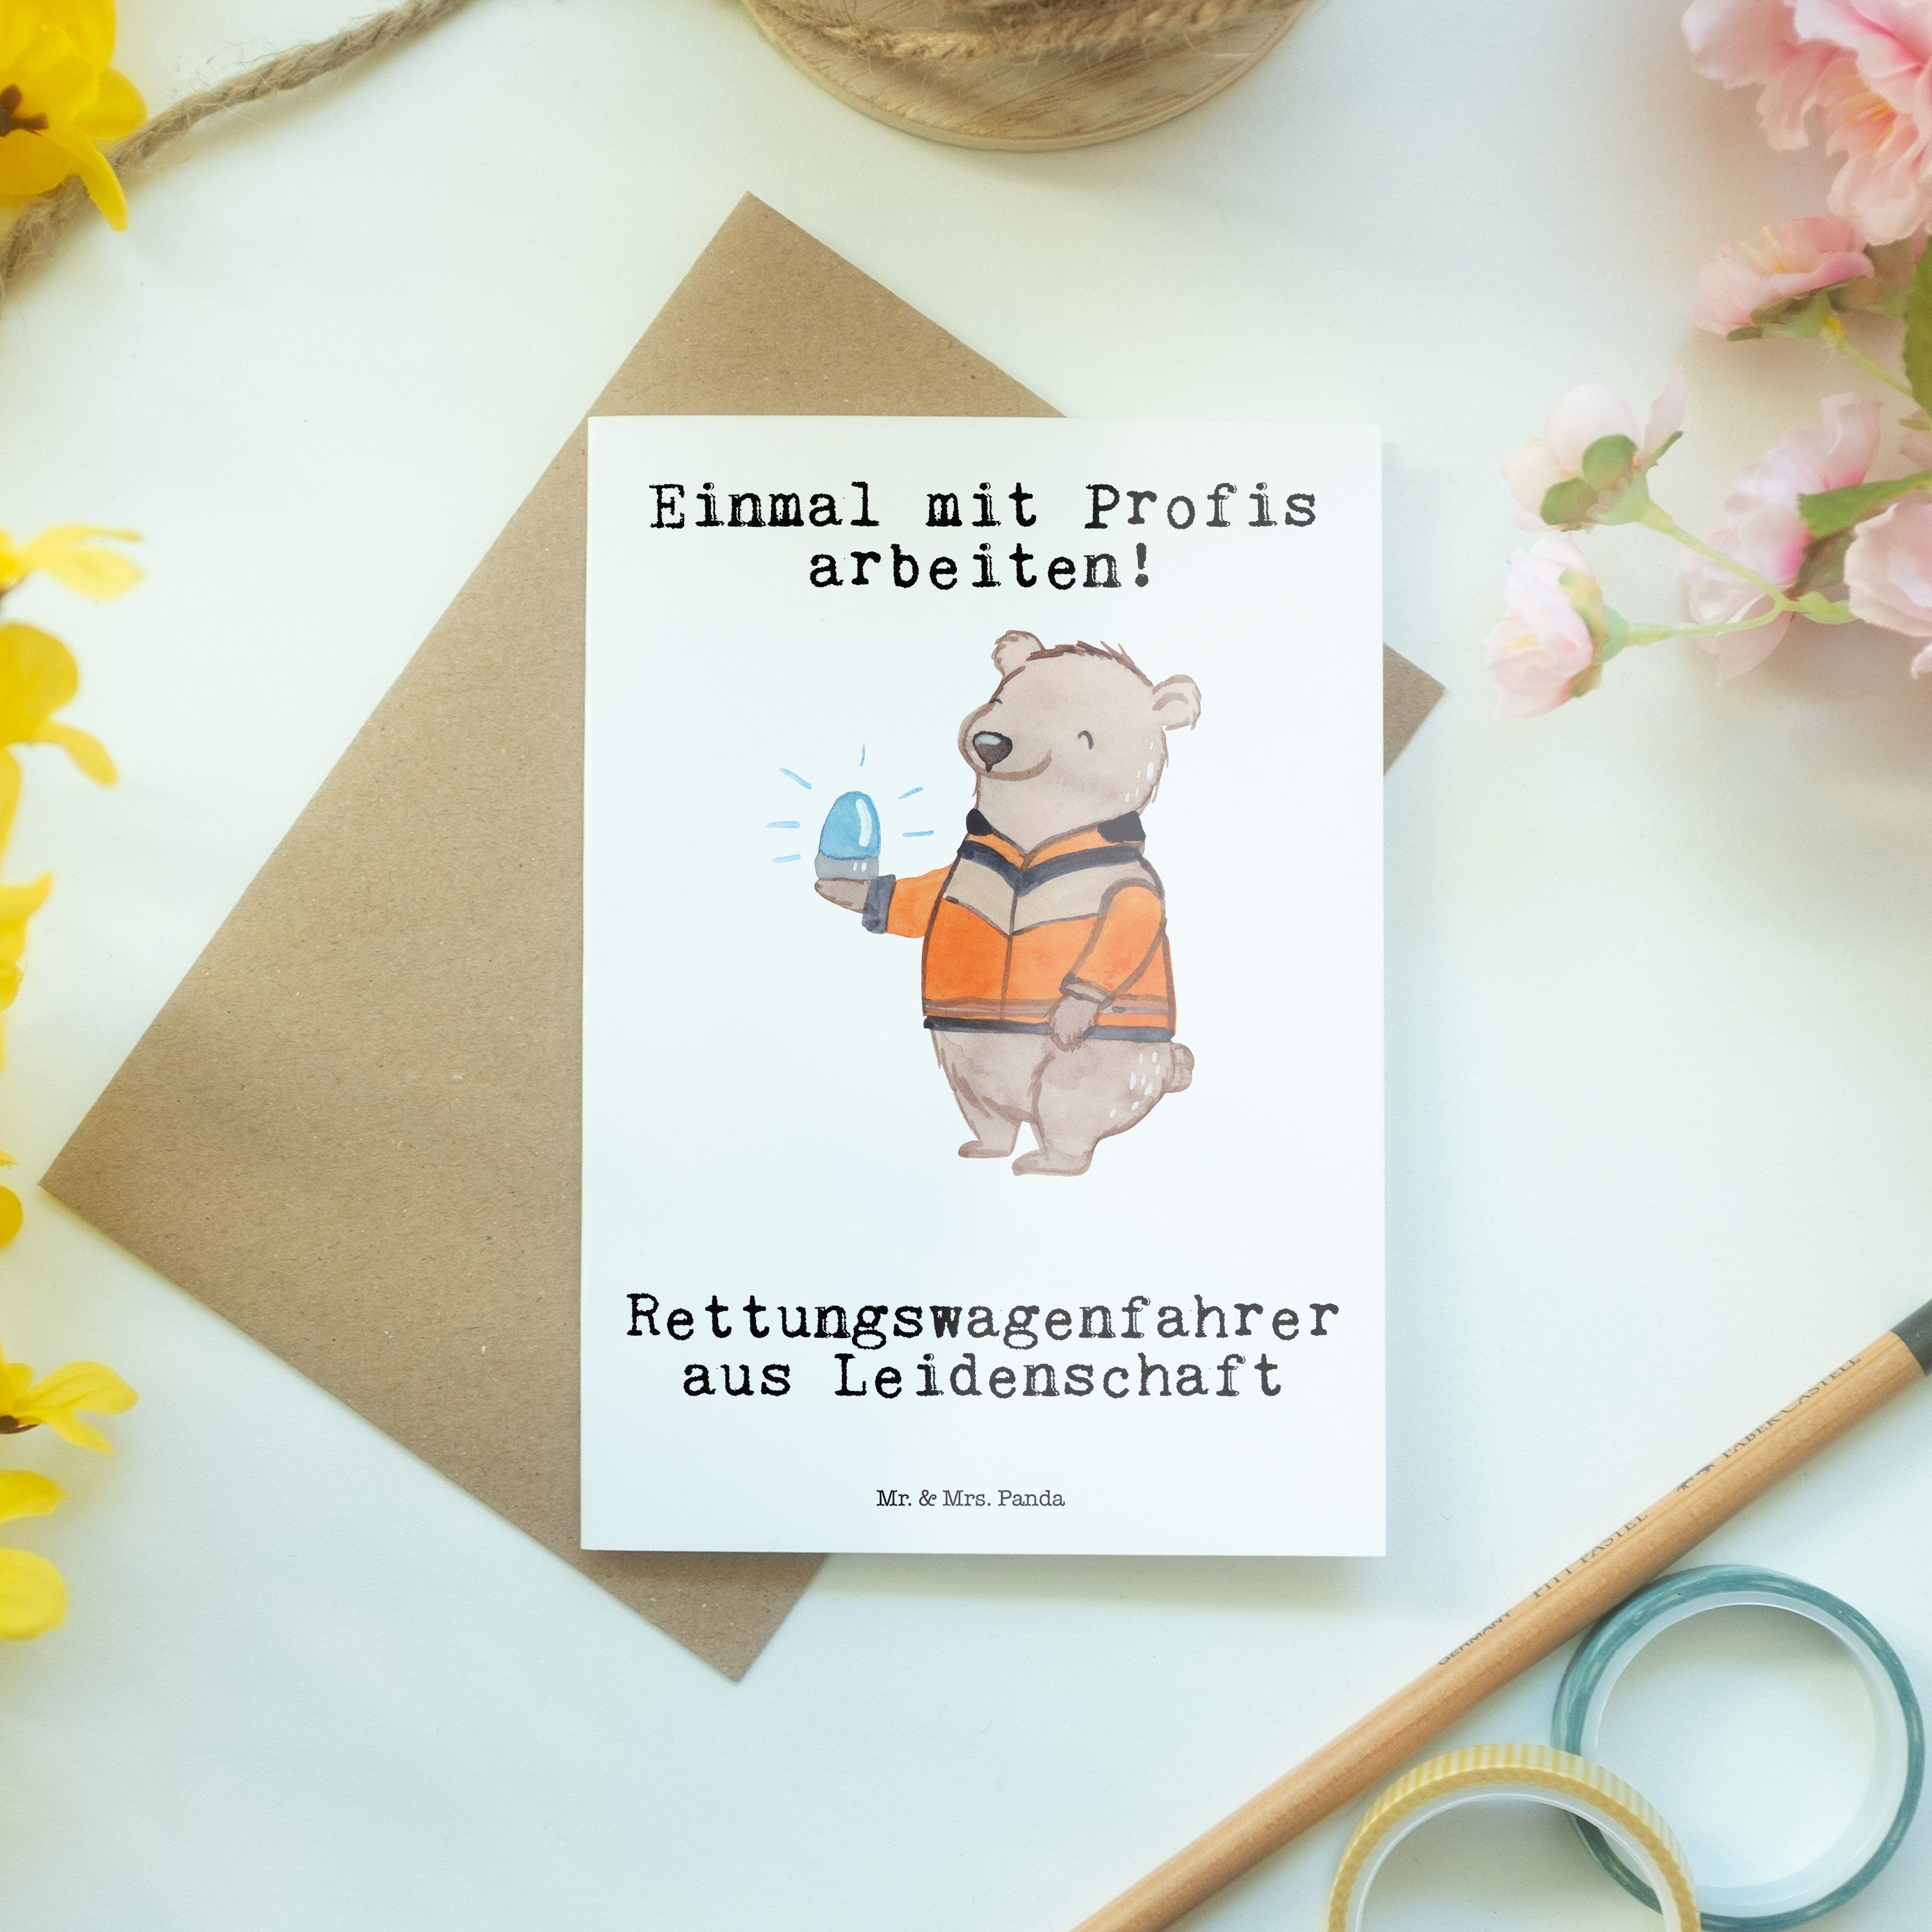 Rettungswagenfahrer - Weiß Mr. Leidenschaft - Hochzeitskart & Geschenk, Grußkarte aus Mrs. Panda